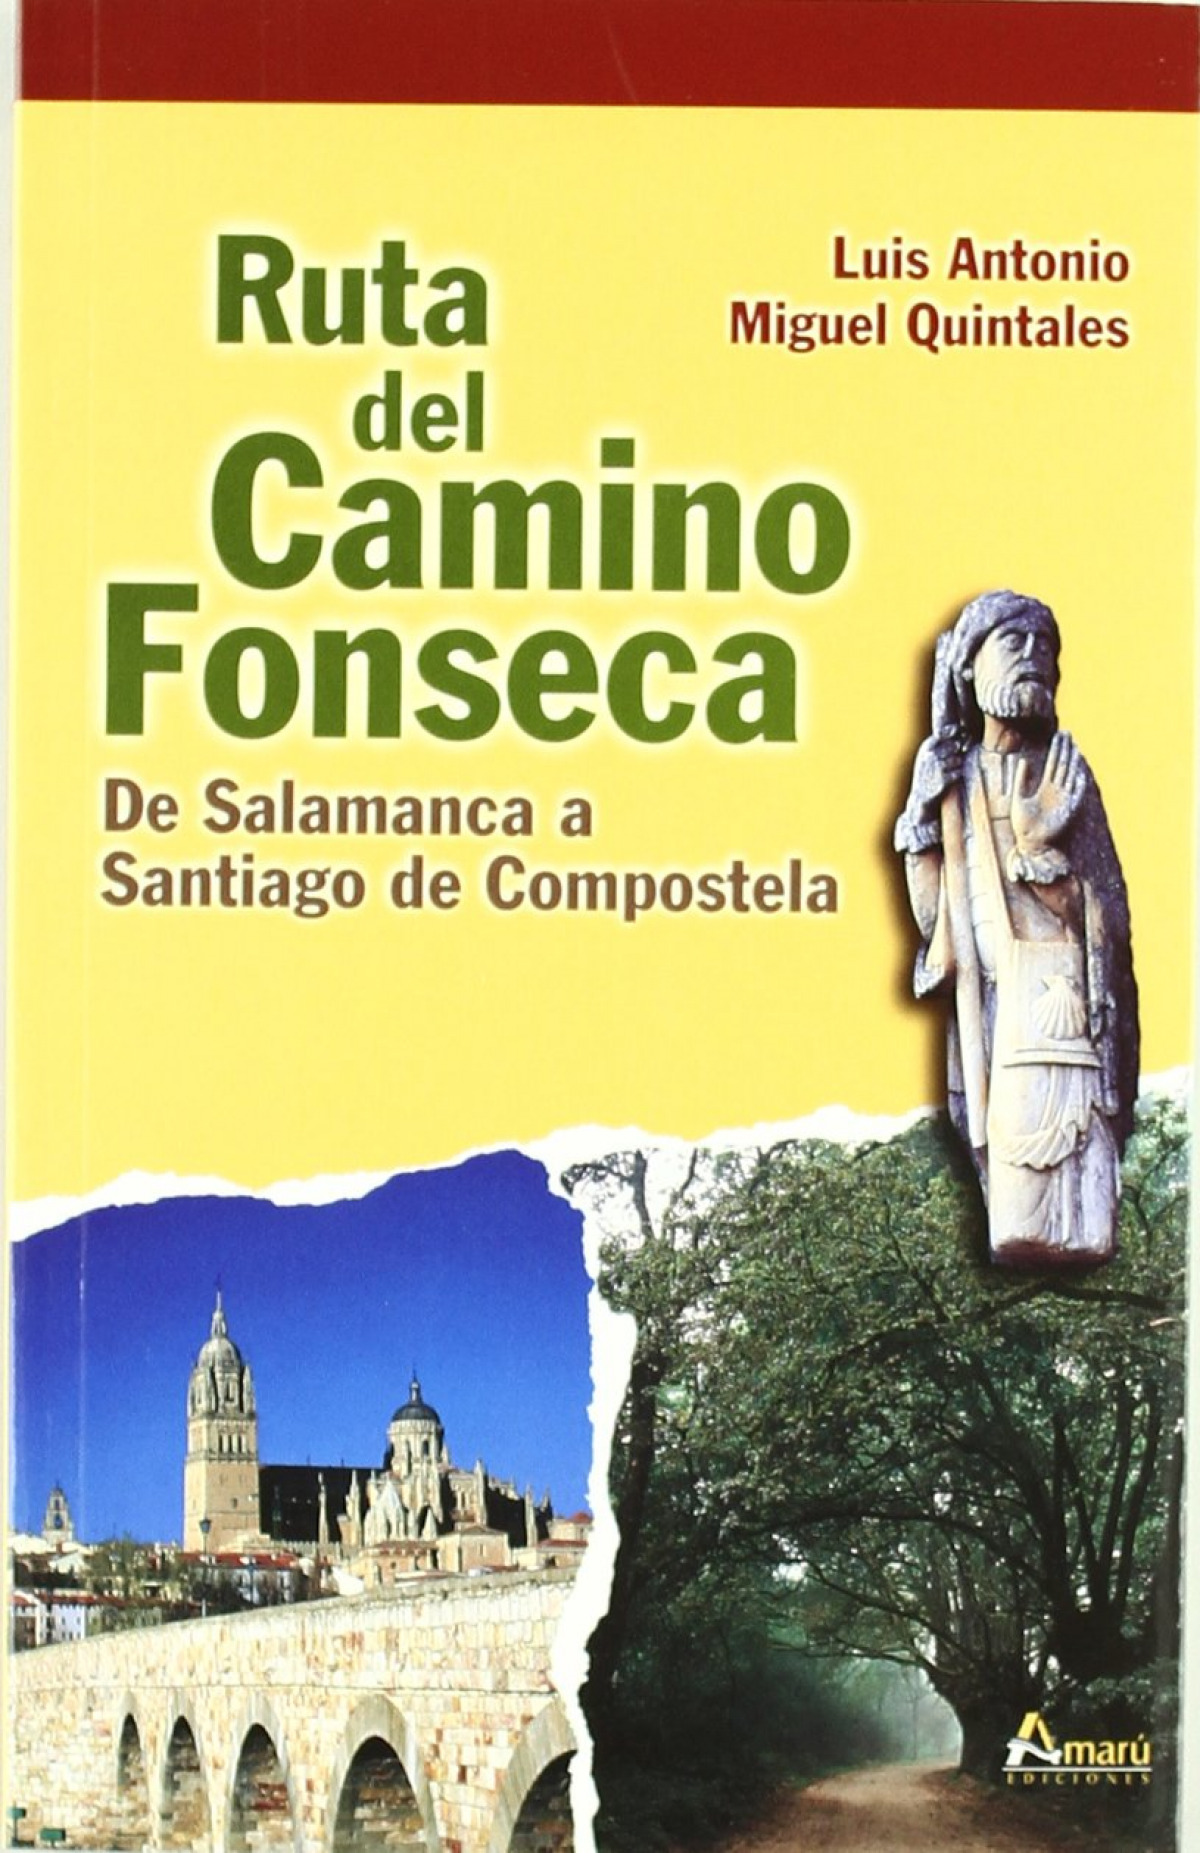 RUTA DEL CAMINO FONSECA de Salamanca Santiago de Compostela - Luis Antonio Miguel Quintales